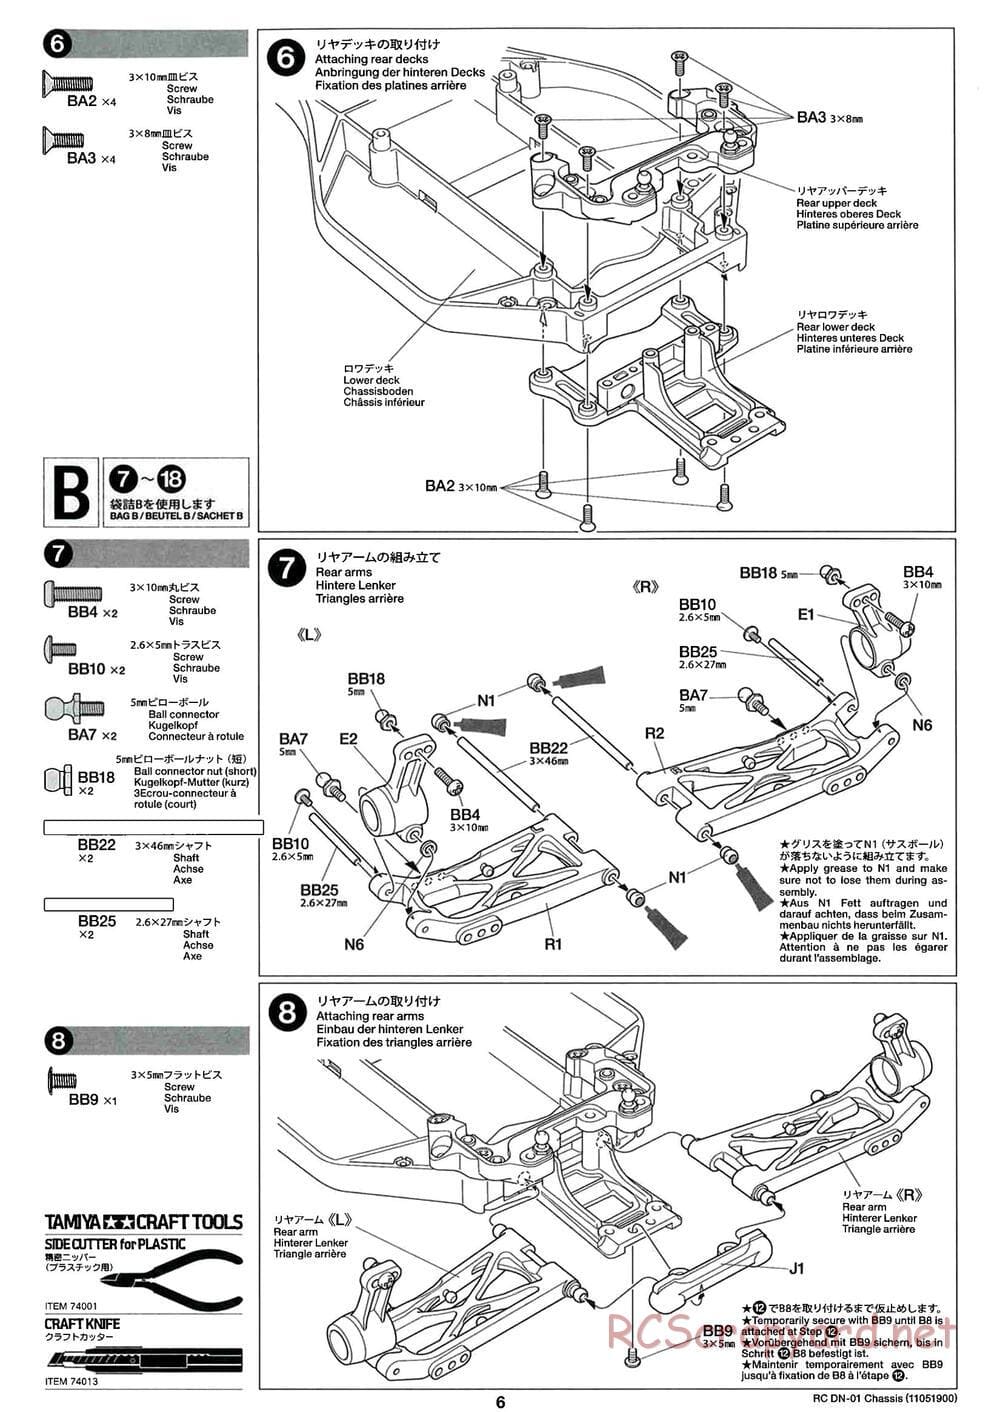 Tamiya - DN-01 Chassis - Manual - Page 6